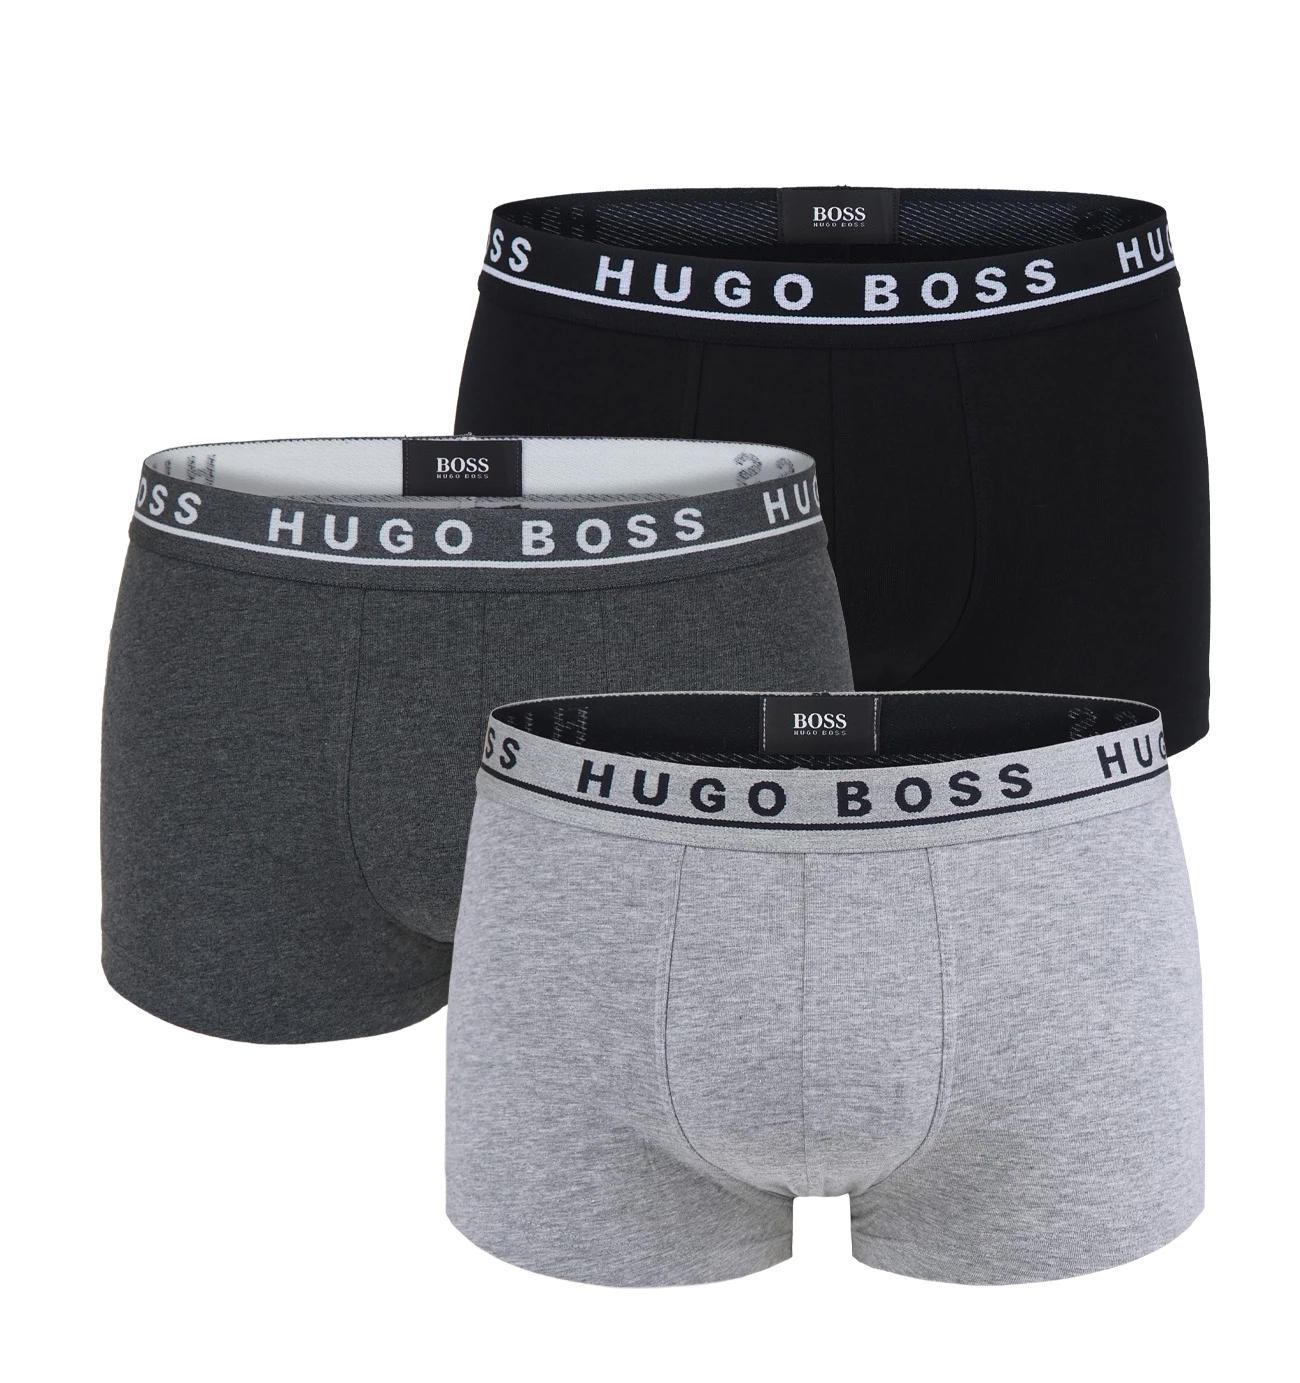 BOSS - 3PACK boxerky gray combo (HUGO BOSS)